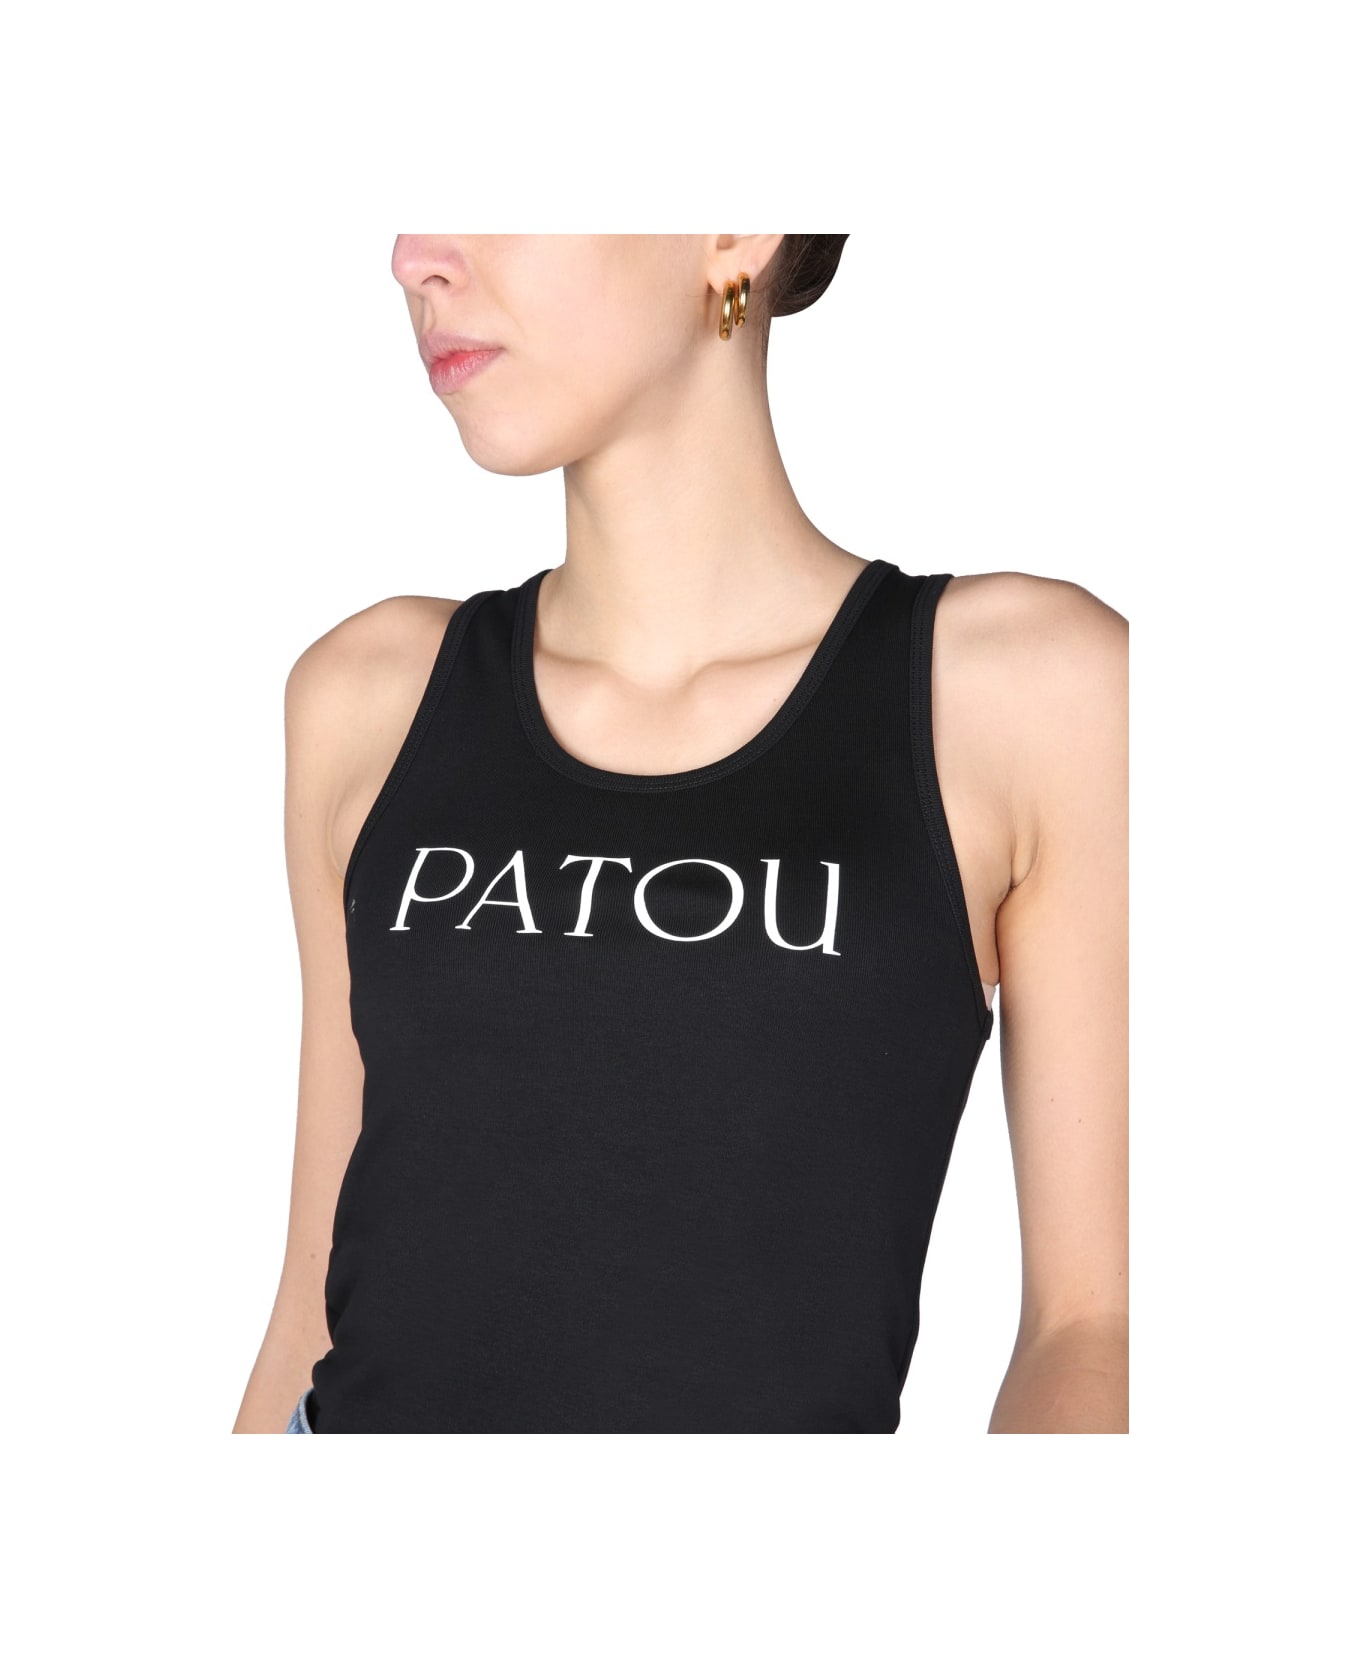 Patou Top With Logo Print - BLACK